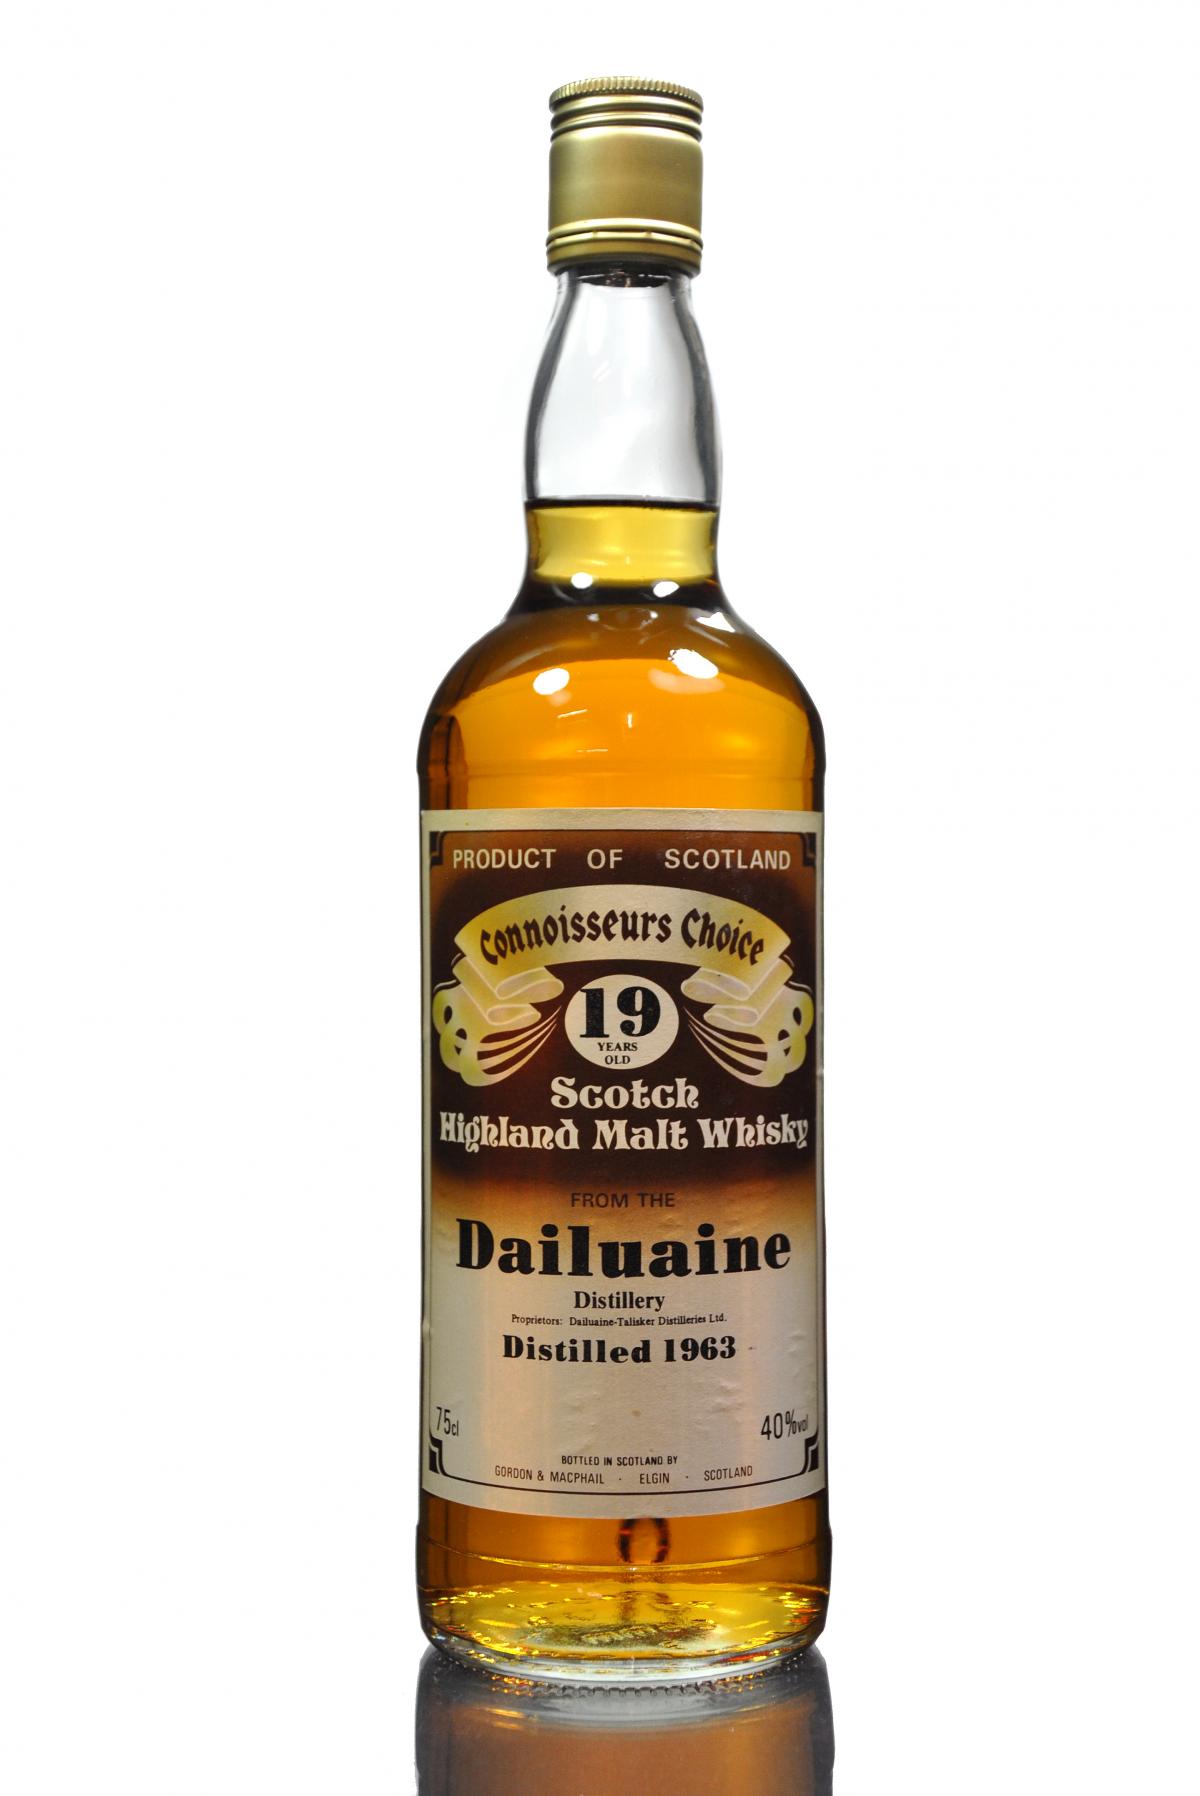 Dailuaine 1963 - 19 Year Old - Connoisseurs Choice